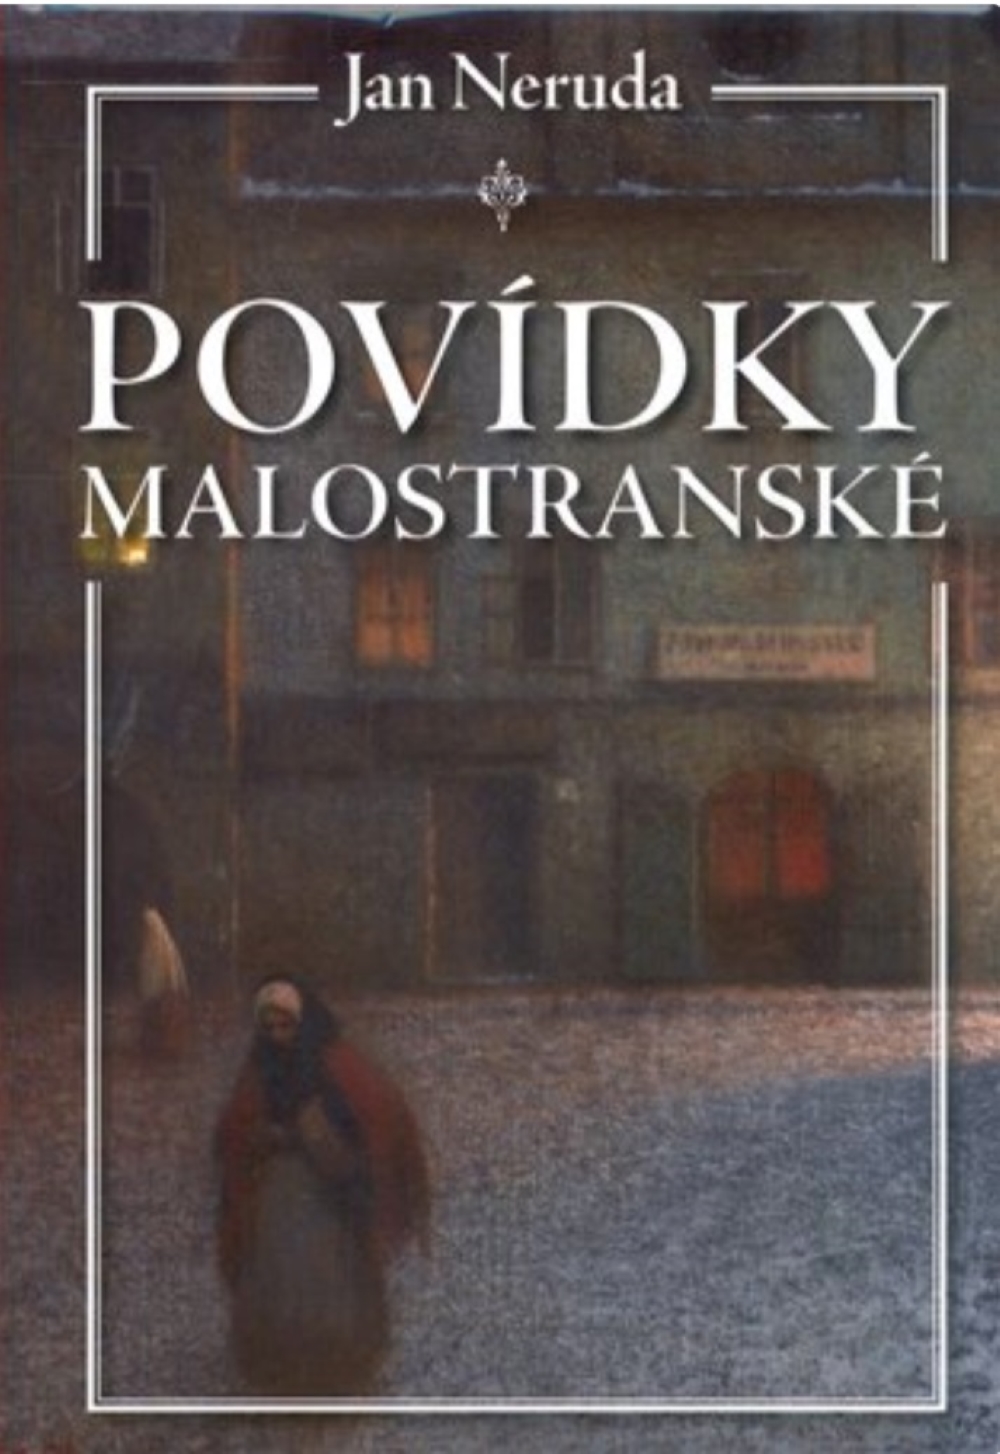 Plakát pro film “Povídky malostranské”